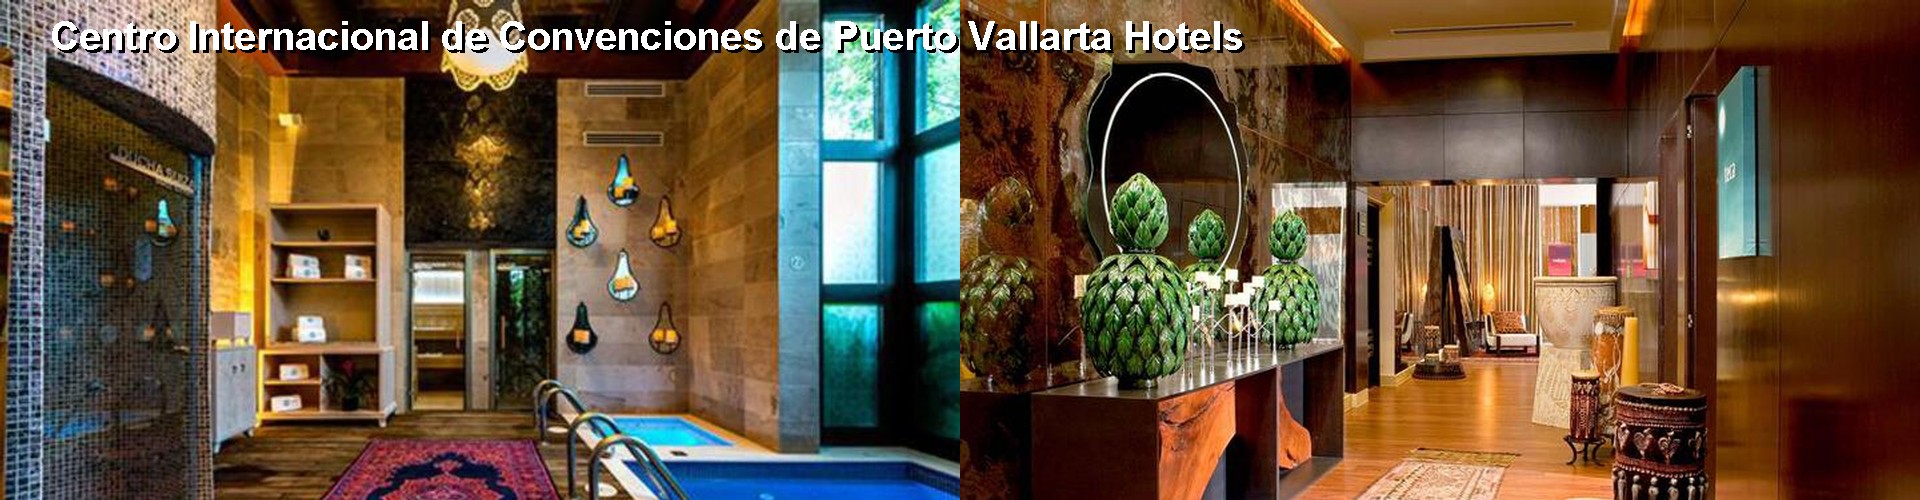 5 Best Hotels near Centro Internacional de Convenciones de Puerto Vallarta